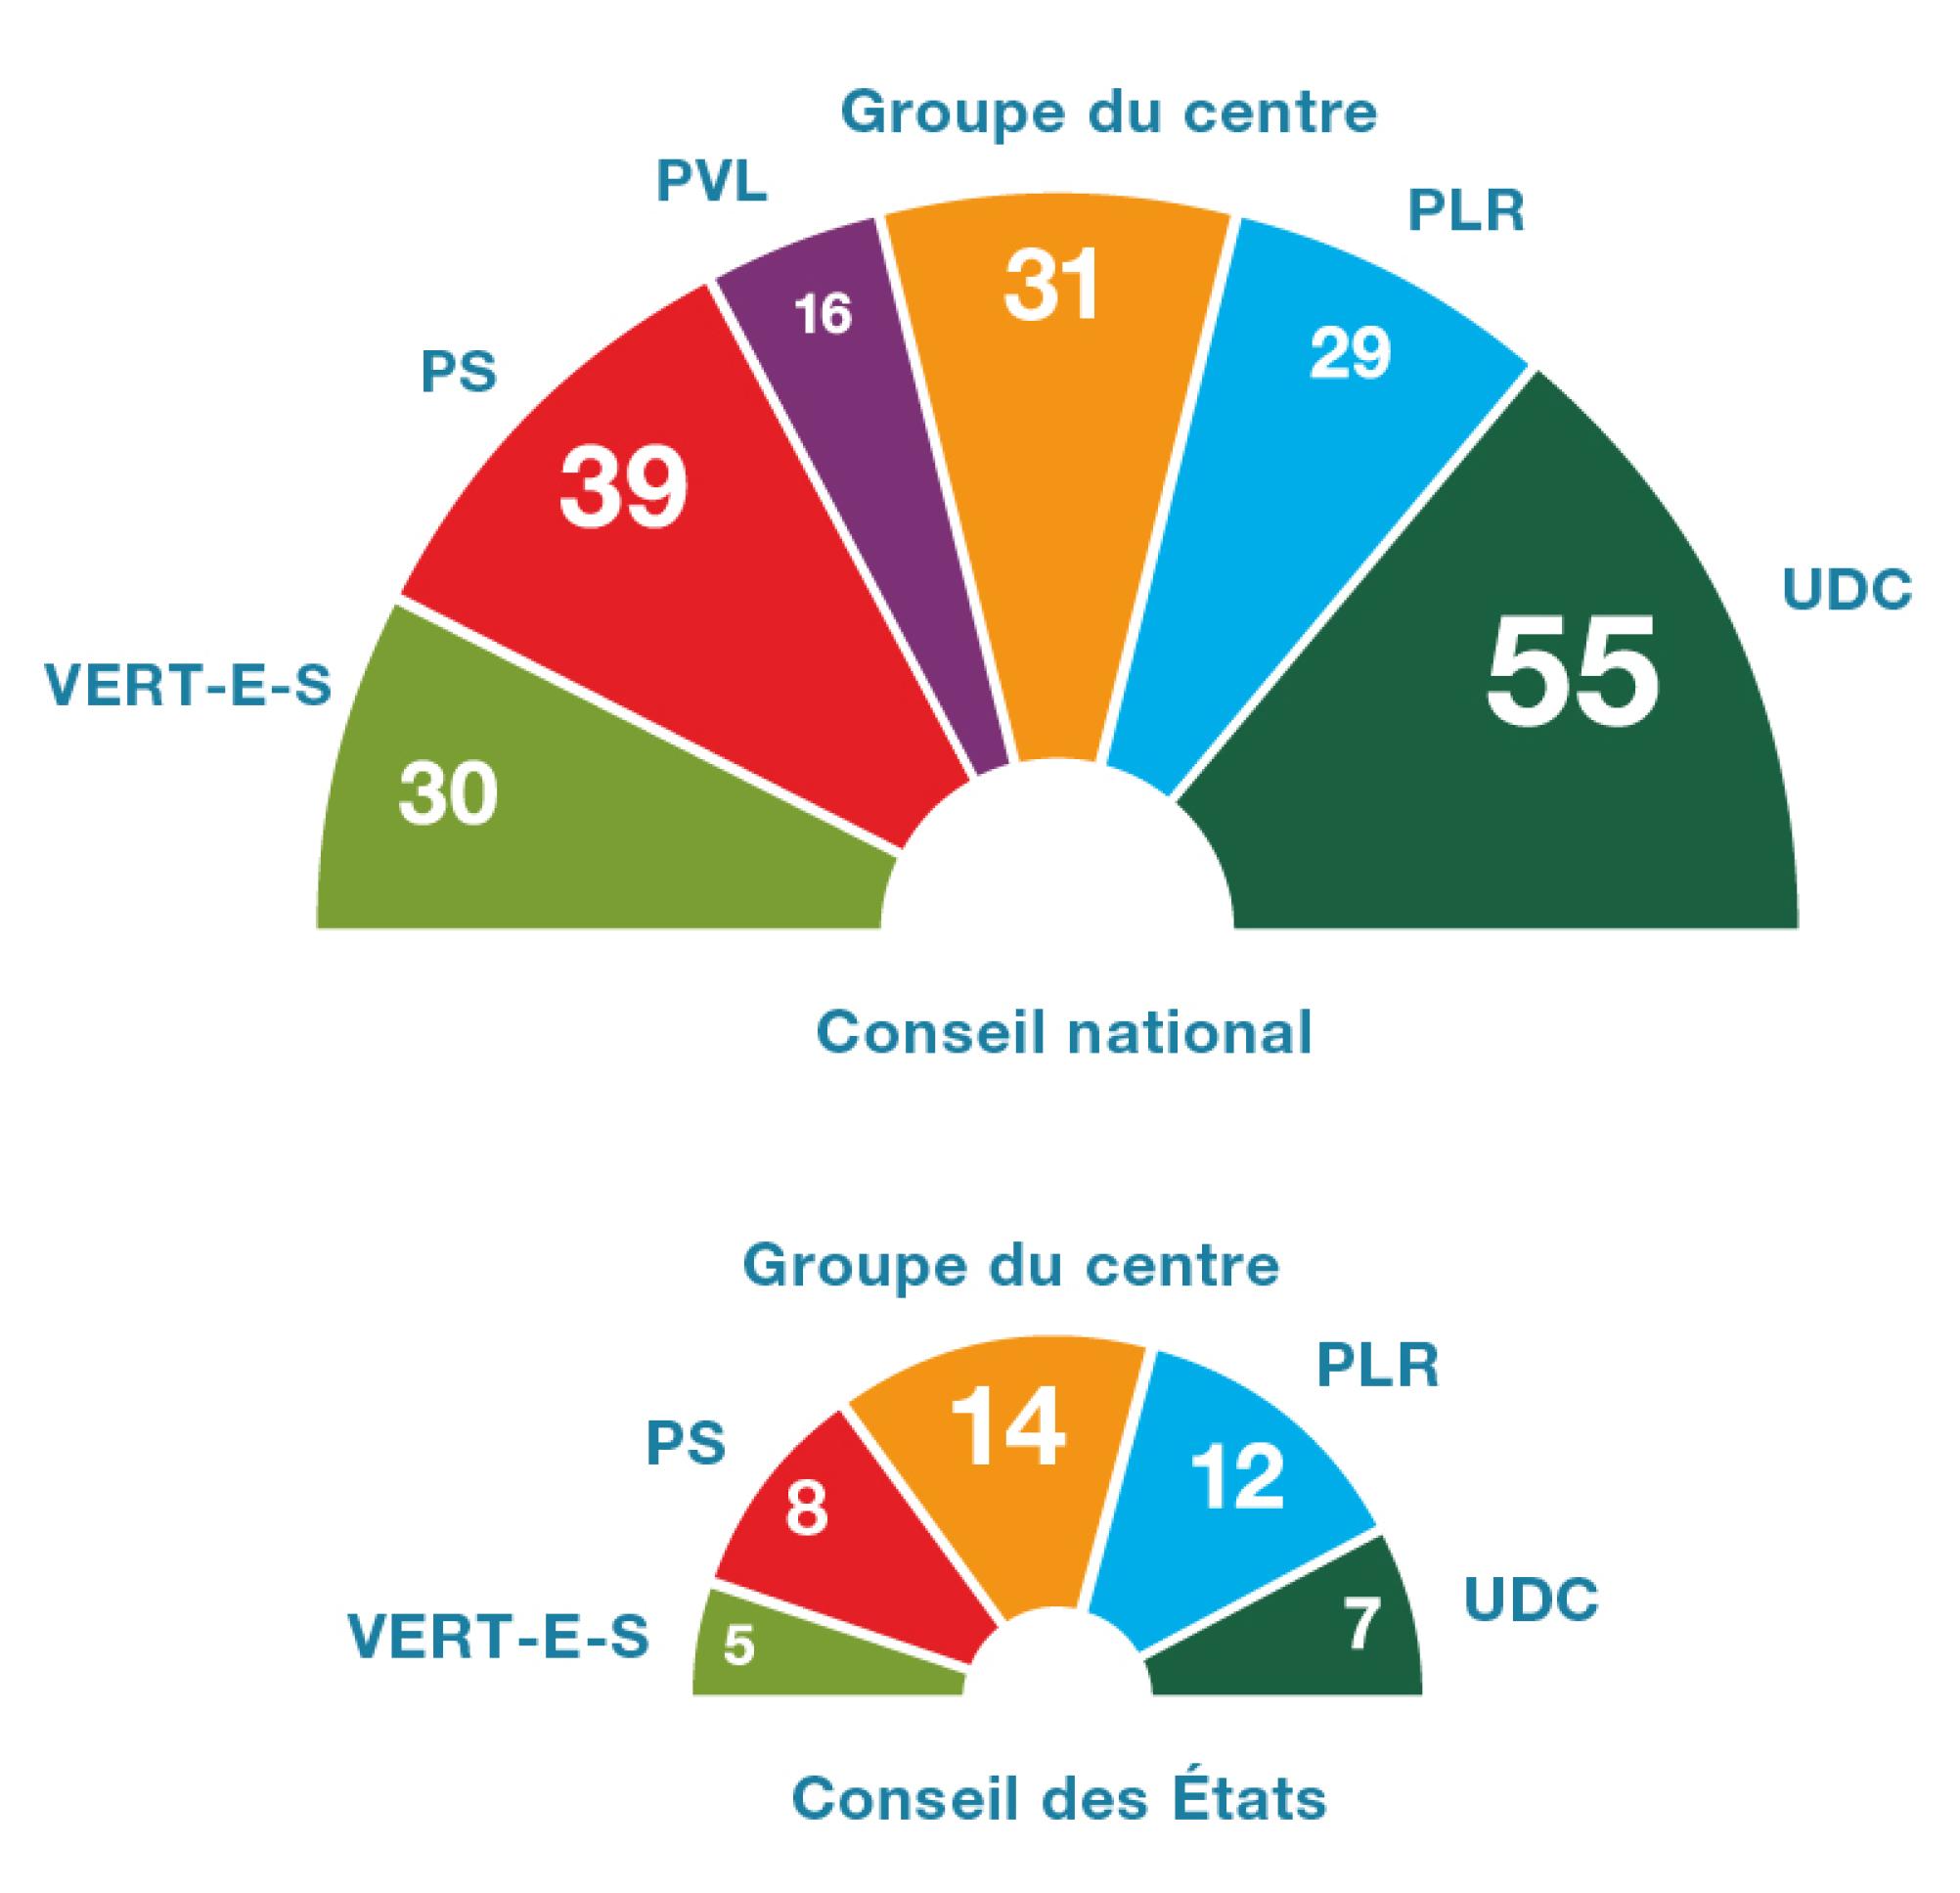 Le graphique montre que le Conseil national est constitué de six groupes. Le groupe de l’UDC est le plus important car il compte 55 membres. Le deuxième groupe le plus important est celui du PS, qui compte 39 membres. Viennent ensuite le groupe du centre avec 31 membres, le groupe des Verts avec 30 membres et le groupe libéral-radical avec 29 membres. Le plus petit groupe est celui des vert-libéraux, qui compte 16 membres.  Le graphique montre que le Conseil des États est constitué de 5 groupes. Le groupe du centre, qui compte 14 membres, et le groupe libéral-radical, qui compte 12 membres, sont les plus importants. Le groupe du PS dénombre 8 membres, celui de l’UDC 7 membres, et celui des Verts 5 membres.